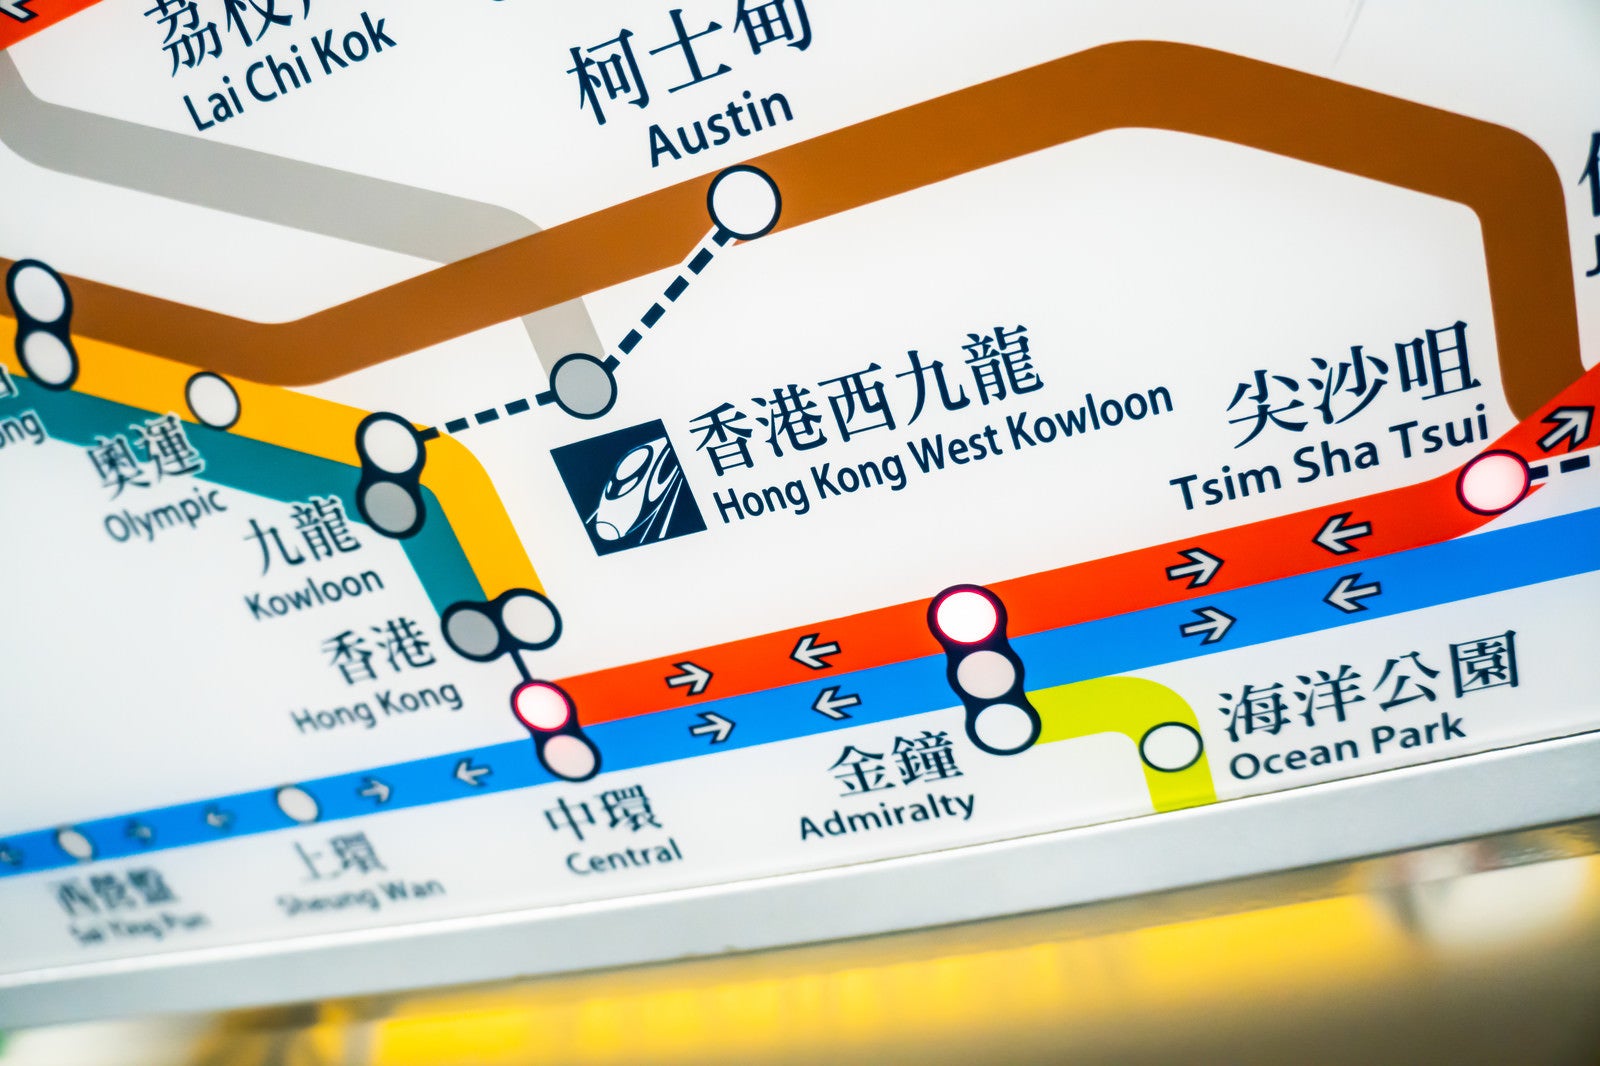 「イミグレが設置されてる広深港高速鉄道の香港西九龍駅の案内図」の写真